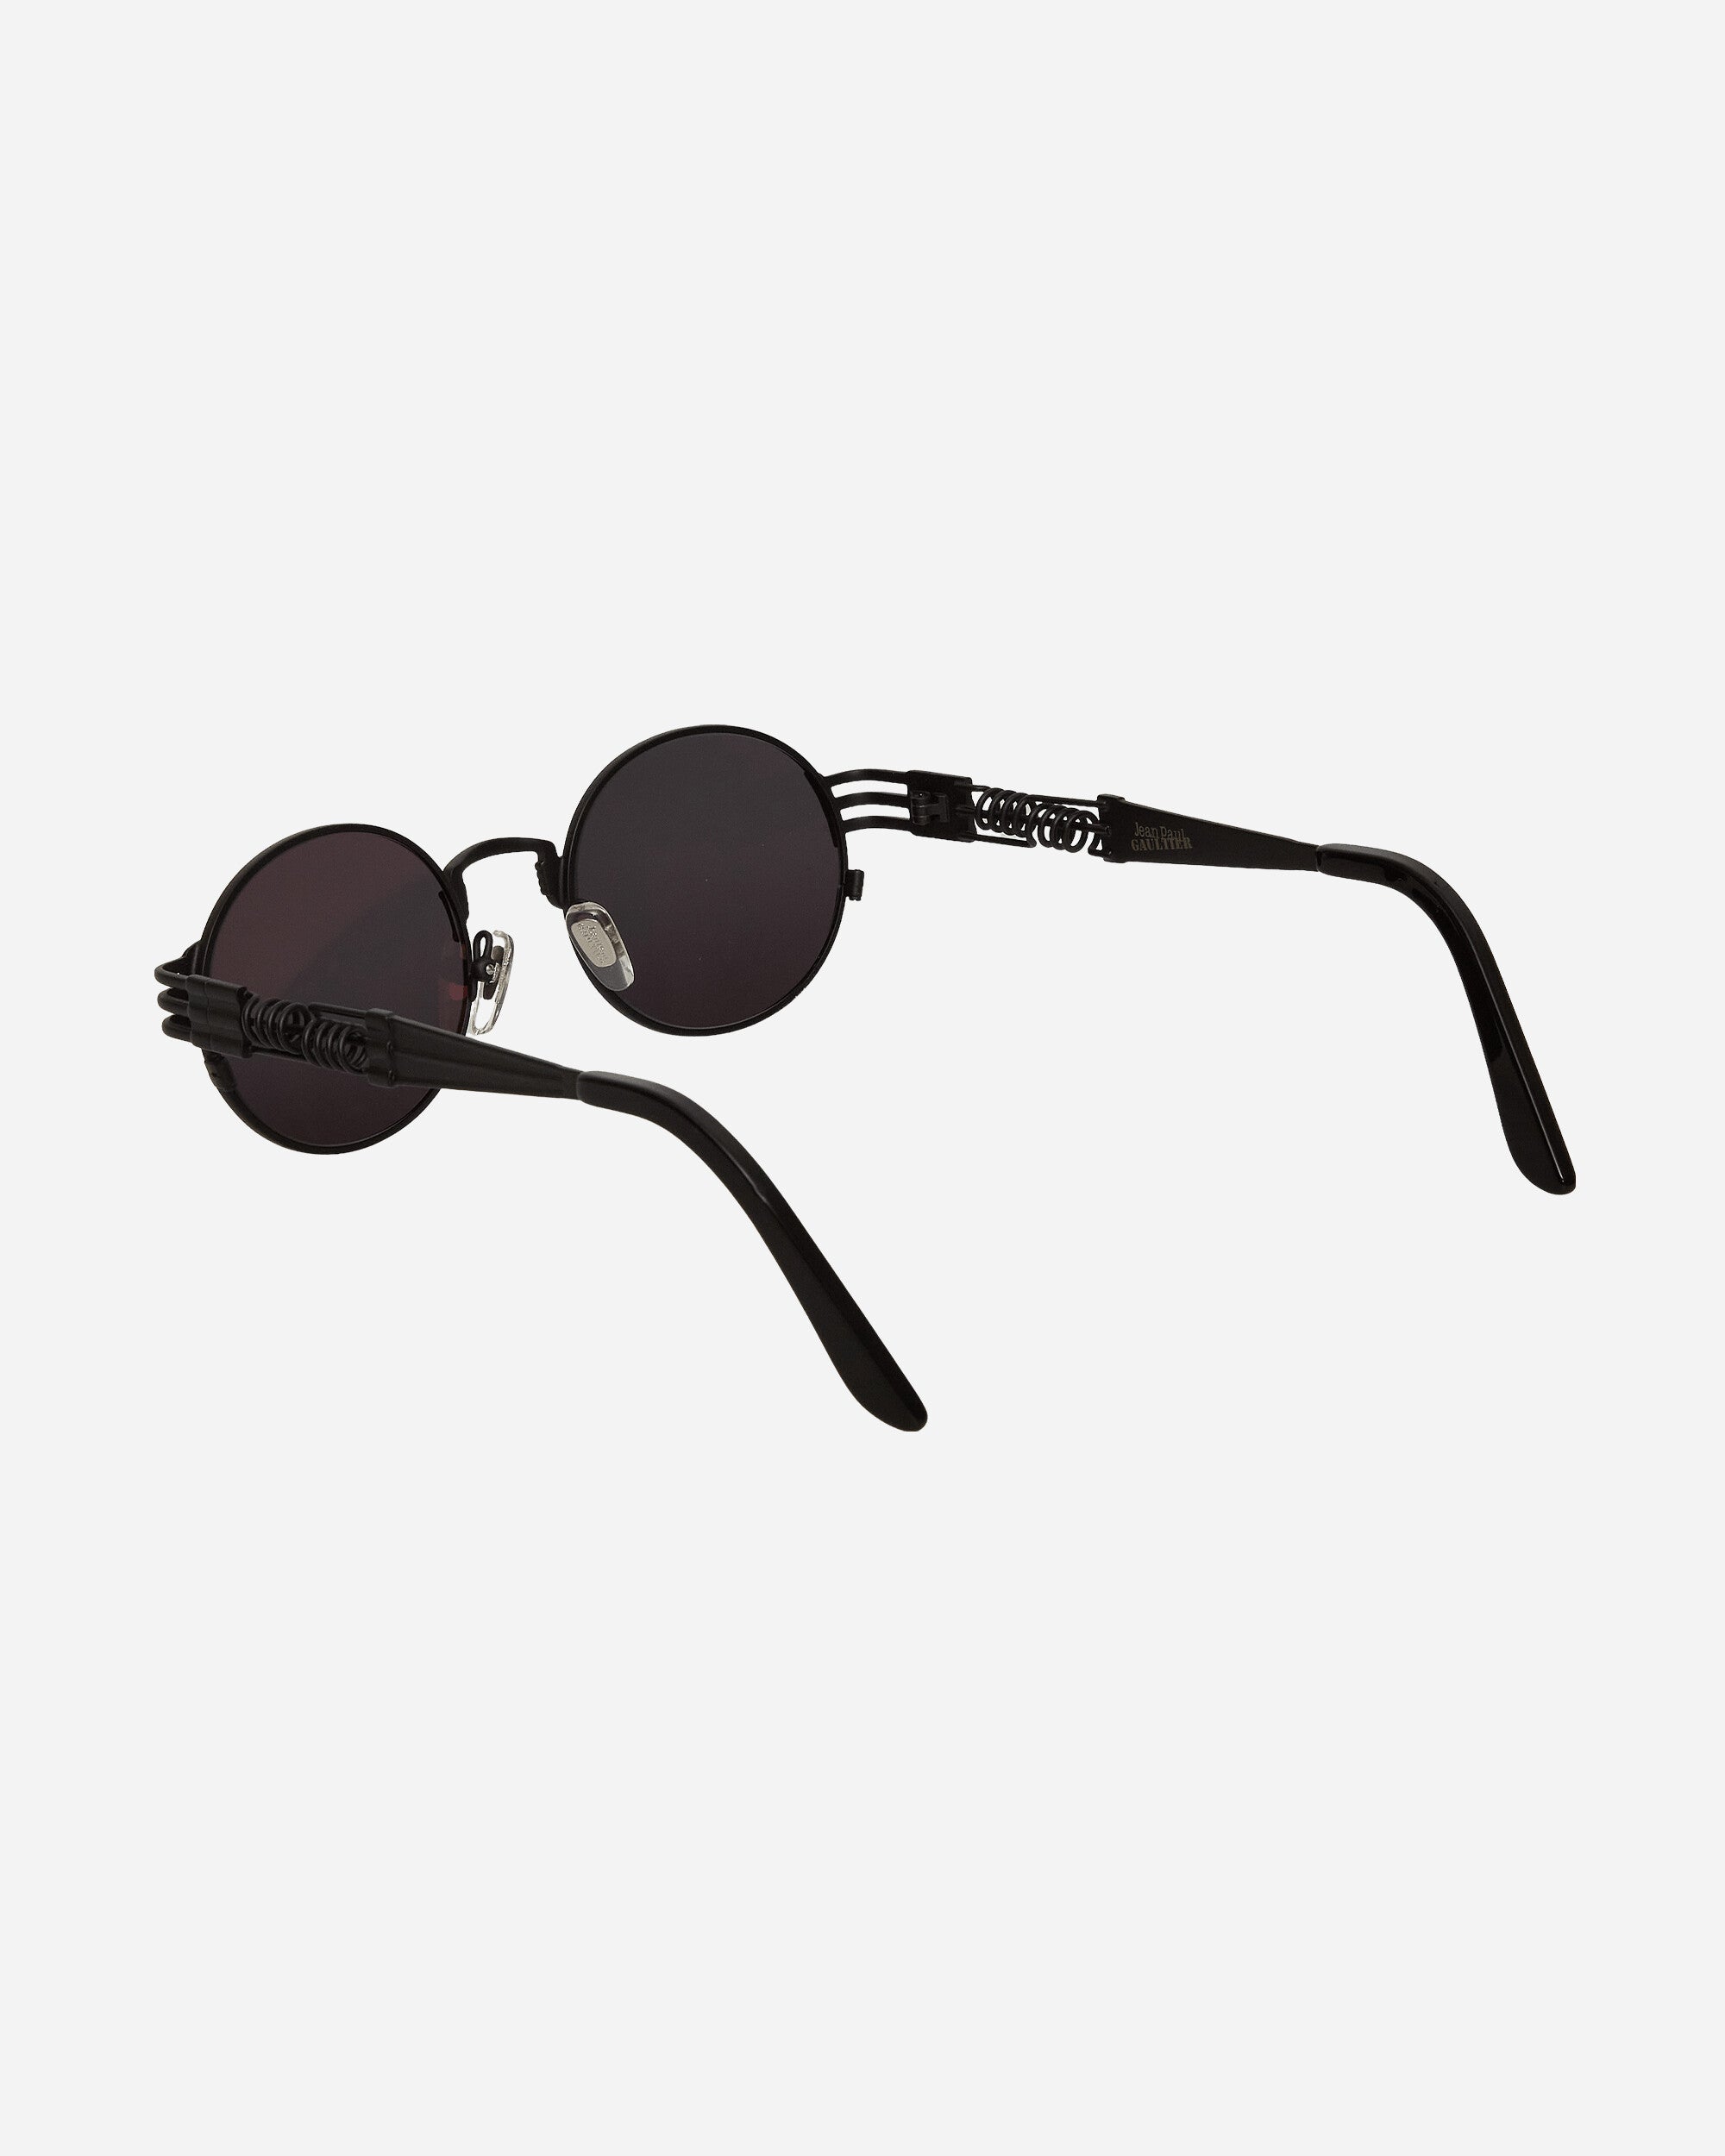 Jean Paul Gaultier 56-6106 Double Ressort Black Eyewear Sunglasses 2318-U-LU004-X024 0